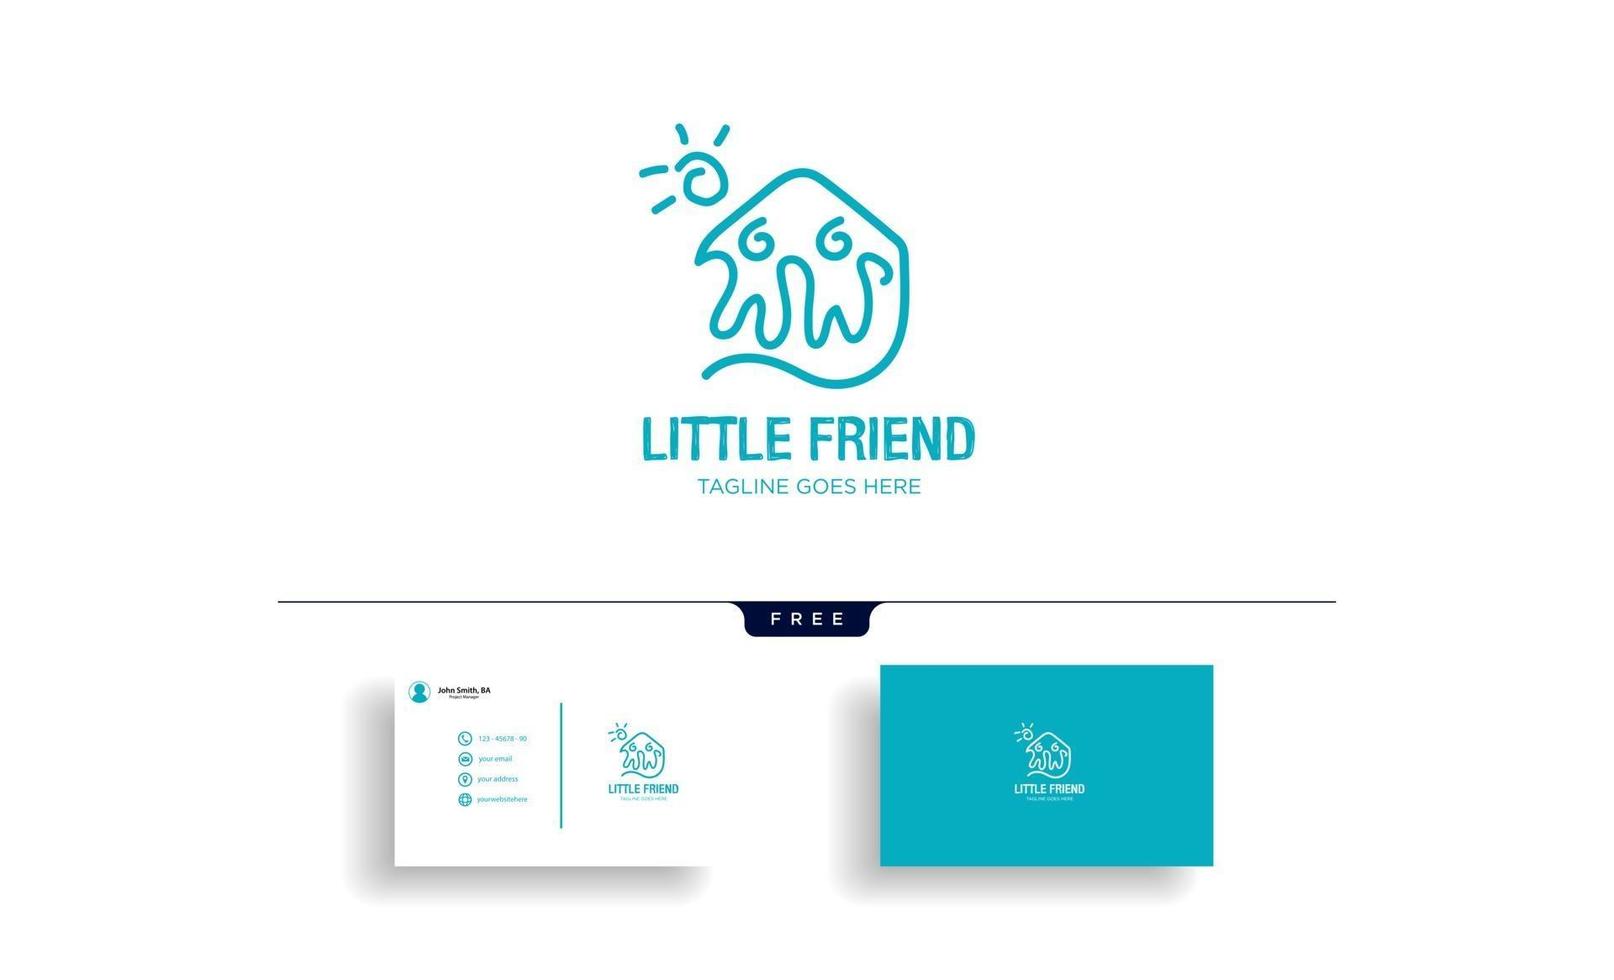 kleiner Freund glücklich Logo Vorlage Vektor-Illustration mit Visitenkarte Vektor